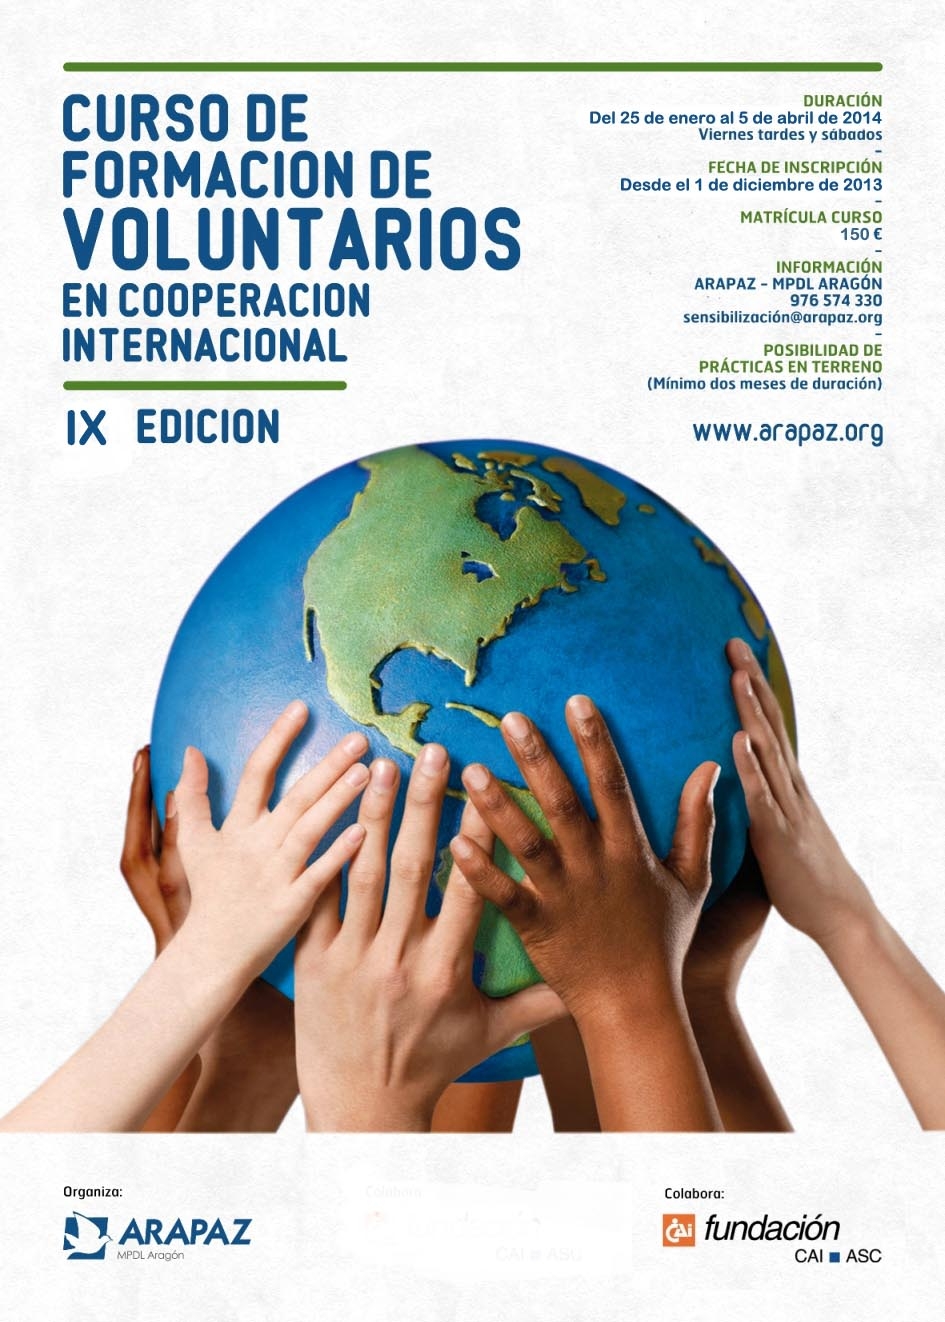 Curso de formacin de voluntariado en cooperacin internacional de Arapaz-MPDL